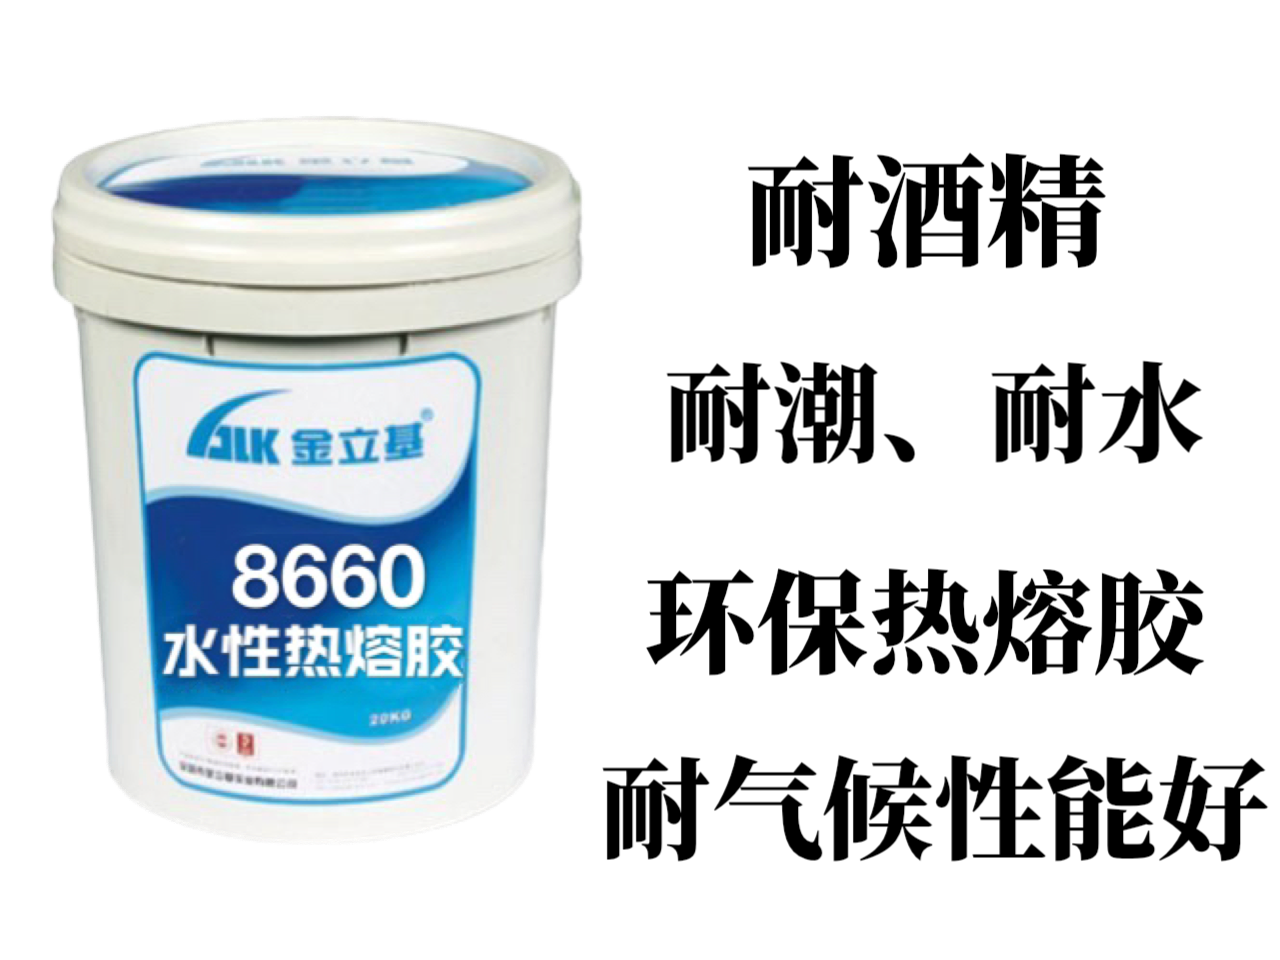 金立基医用水性热封胶，属于环保型水性热封胶。